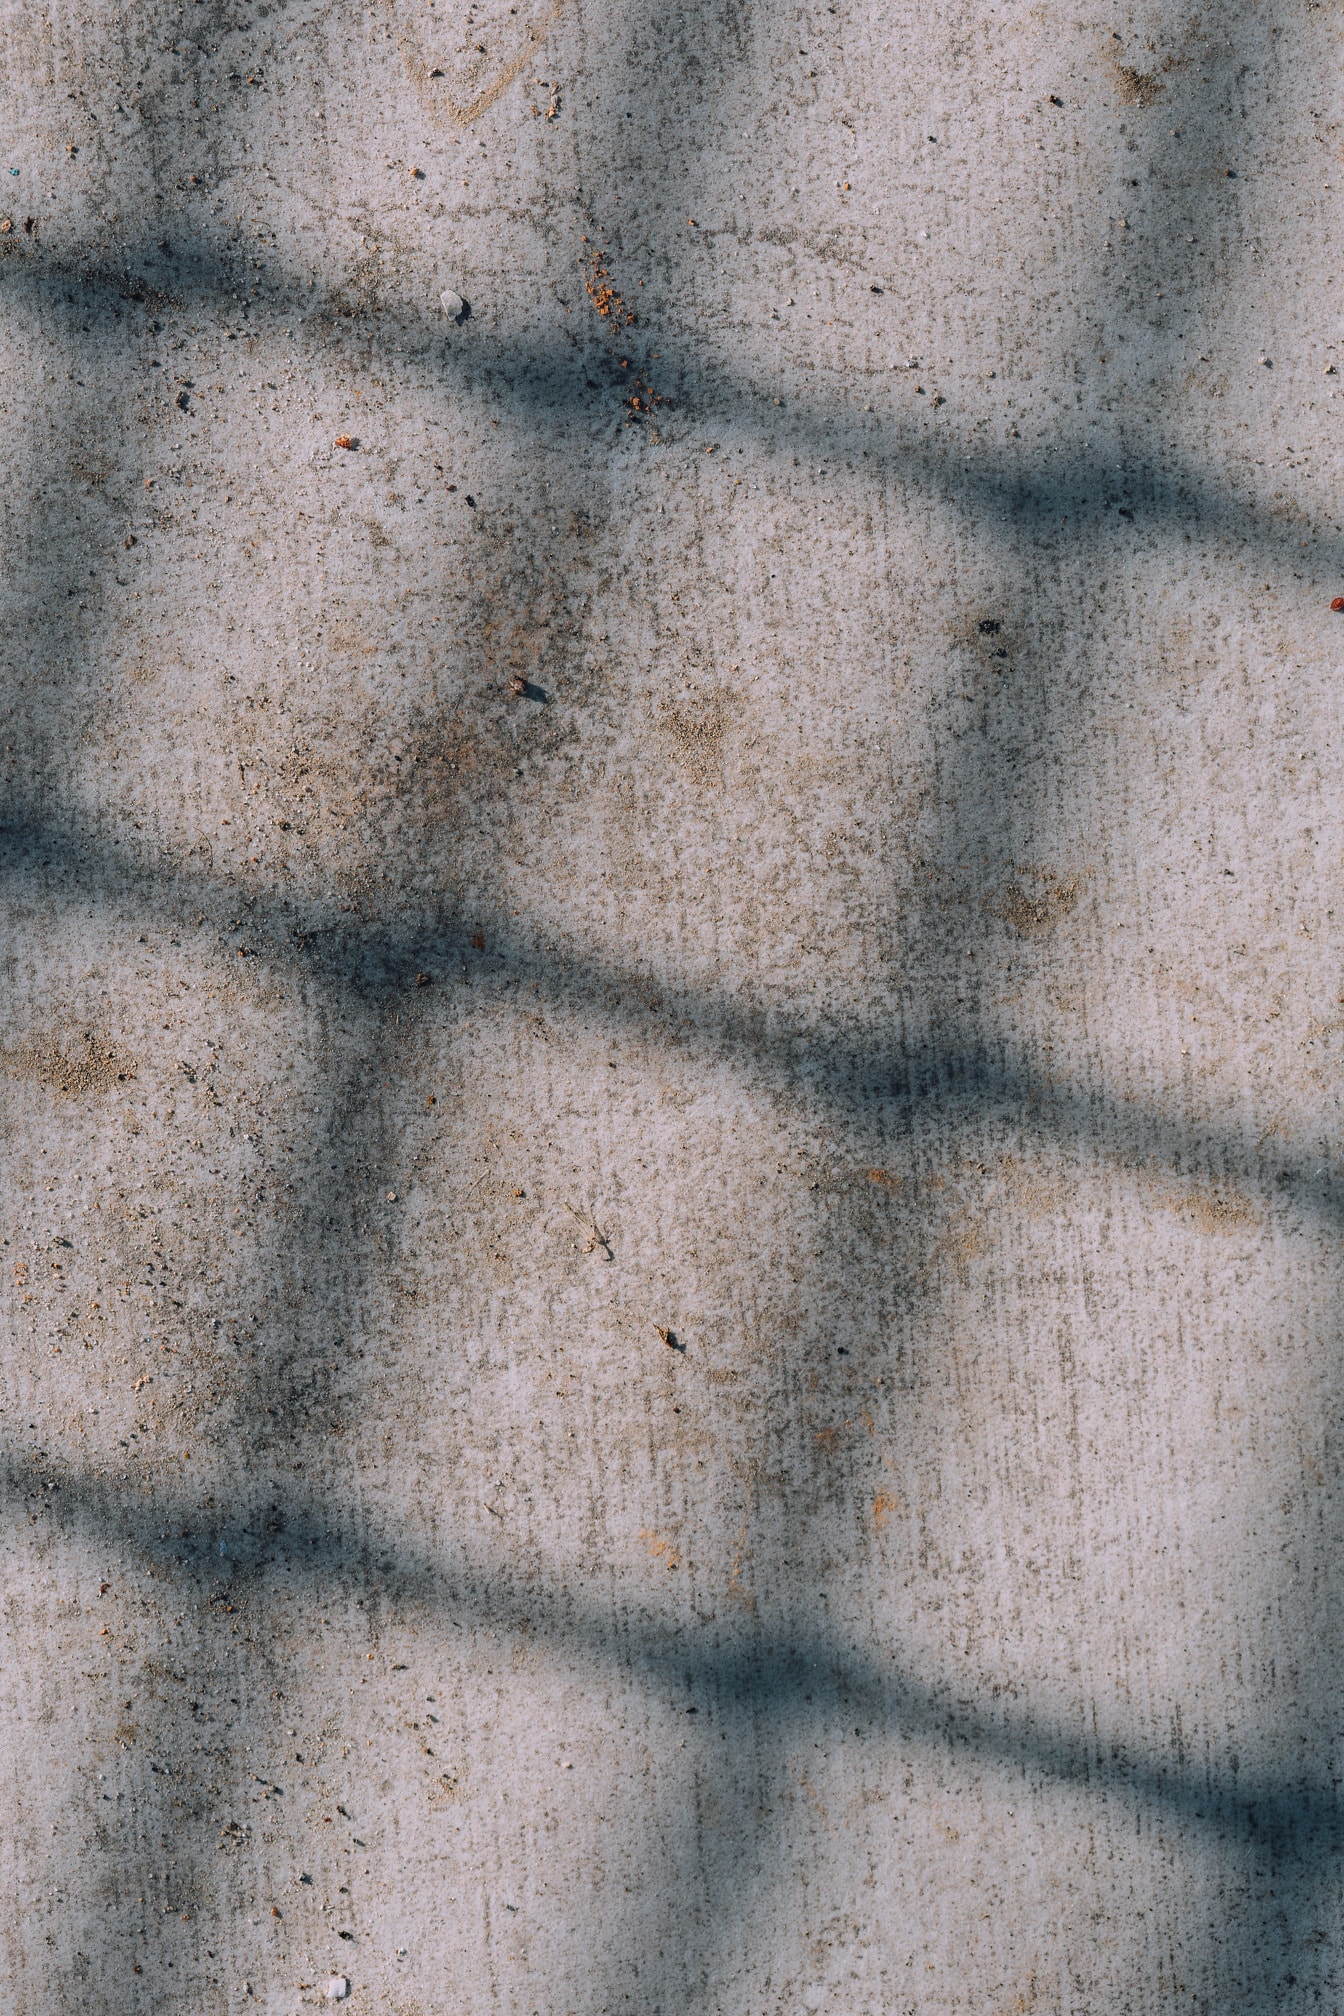 Schaduw in de vorm van een rechthoek op een vuil betonnen oppervlak met vlekken